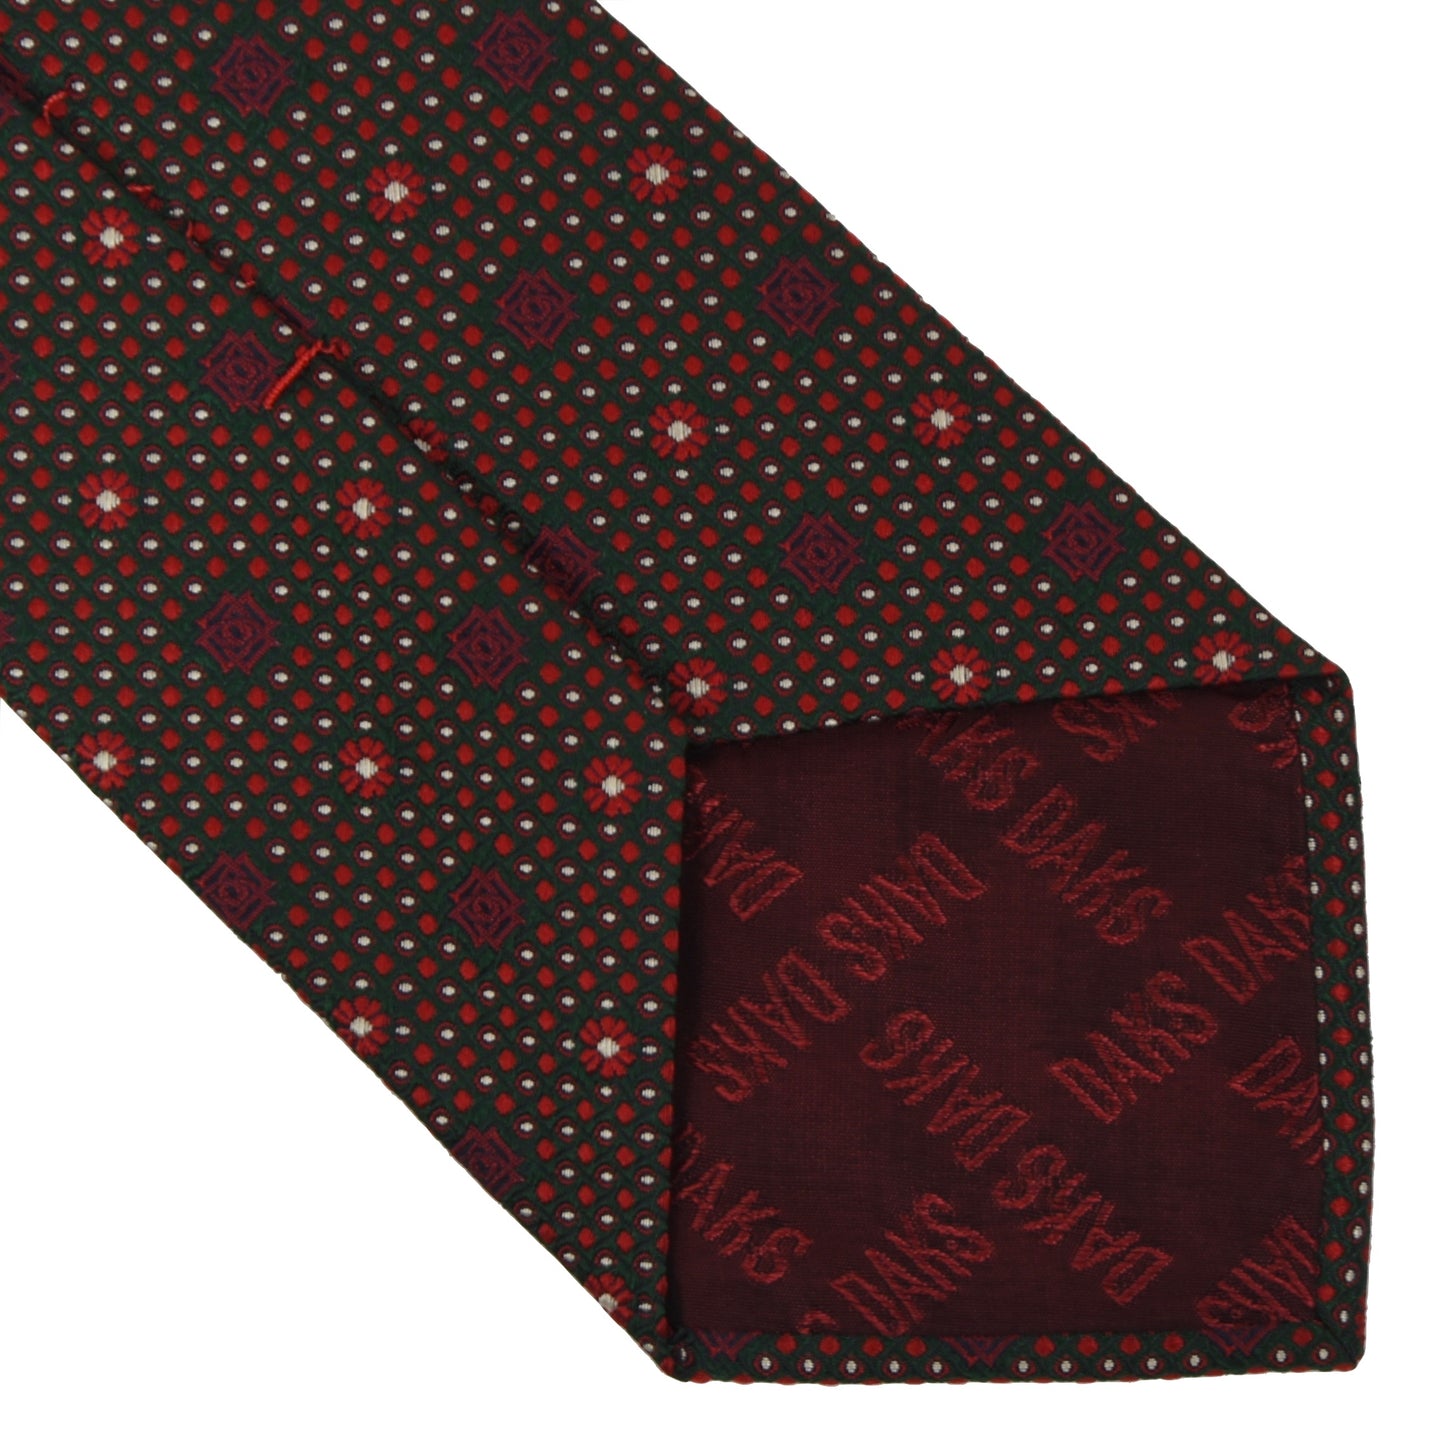 DAKS London Silk Tie - Green & Red